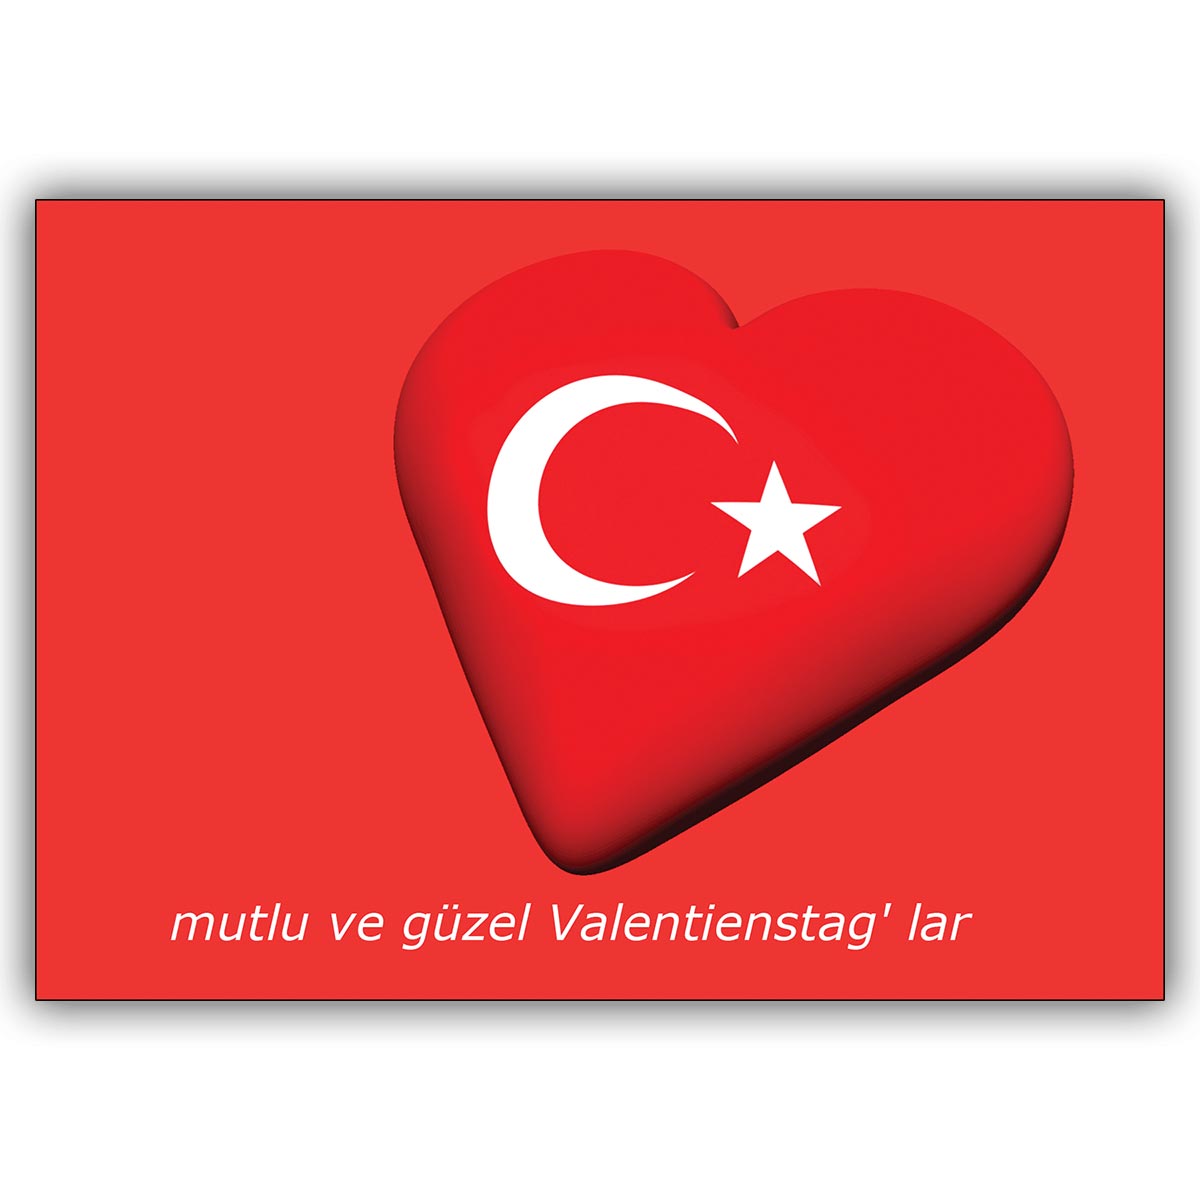 Schicke Rote Valentinskarte Auf Turkisch Mutlu Ve Guzel Valentinstag Lar Kartenkaufrausch De